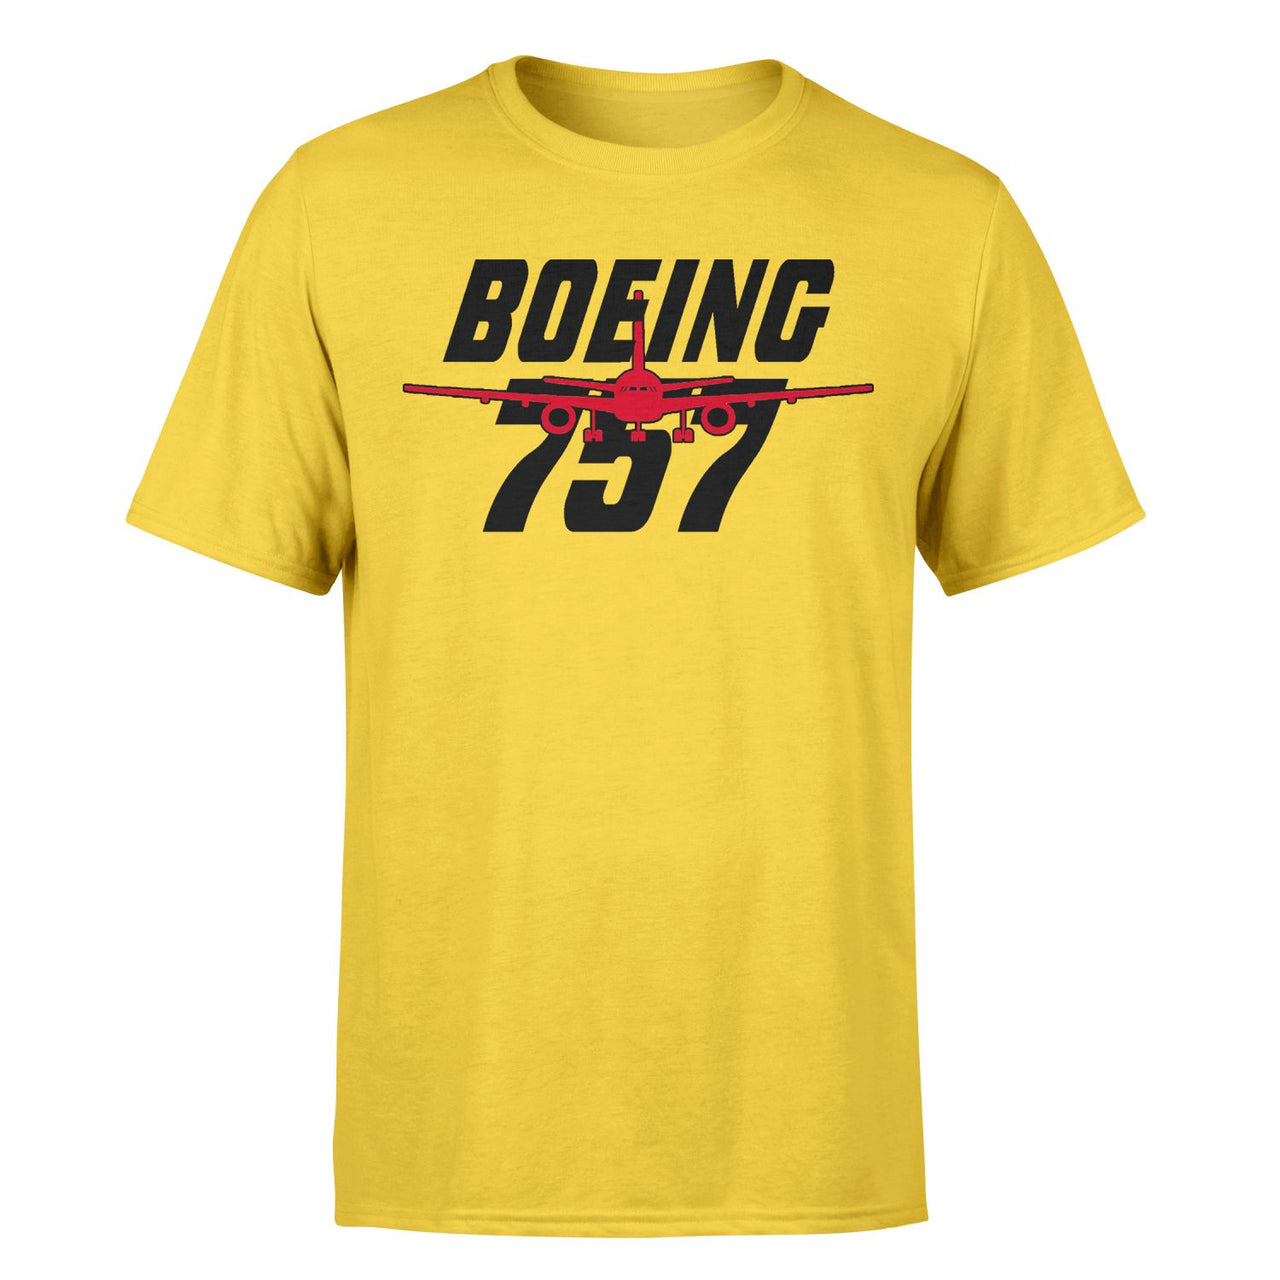 Amazing Boeing 757 Designed T-Shirts